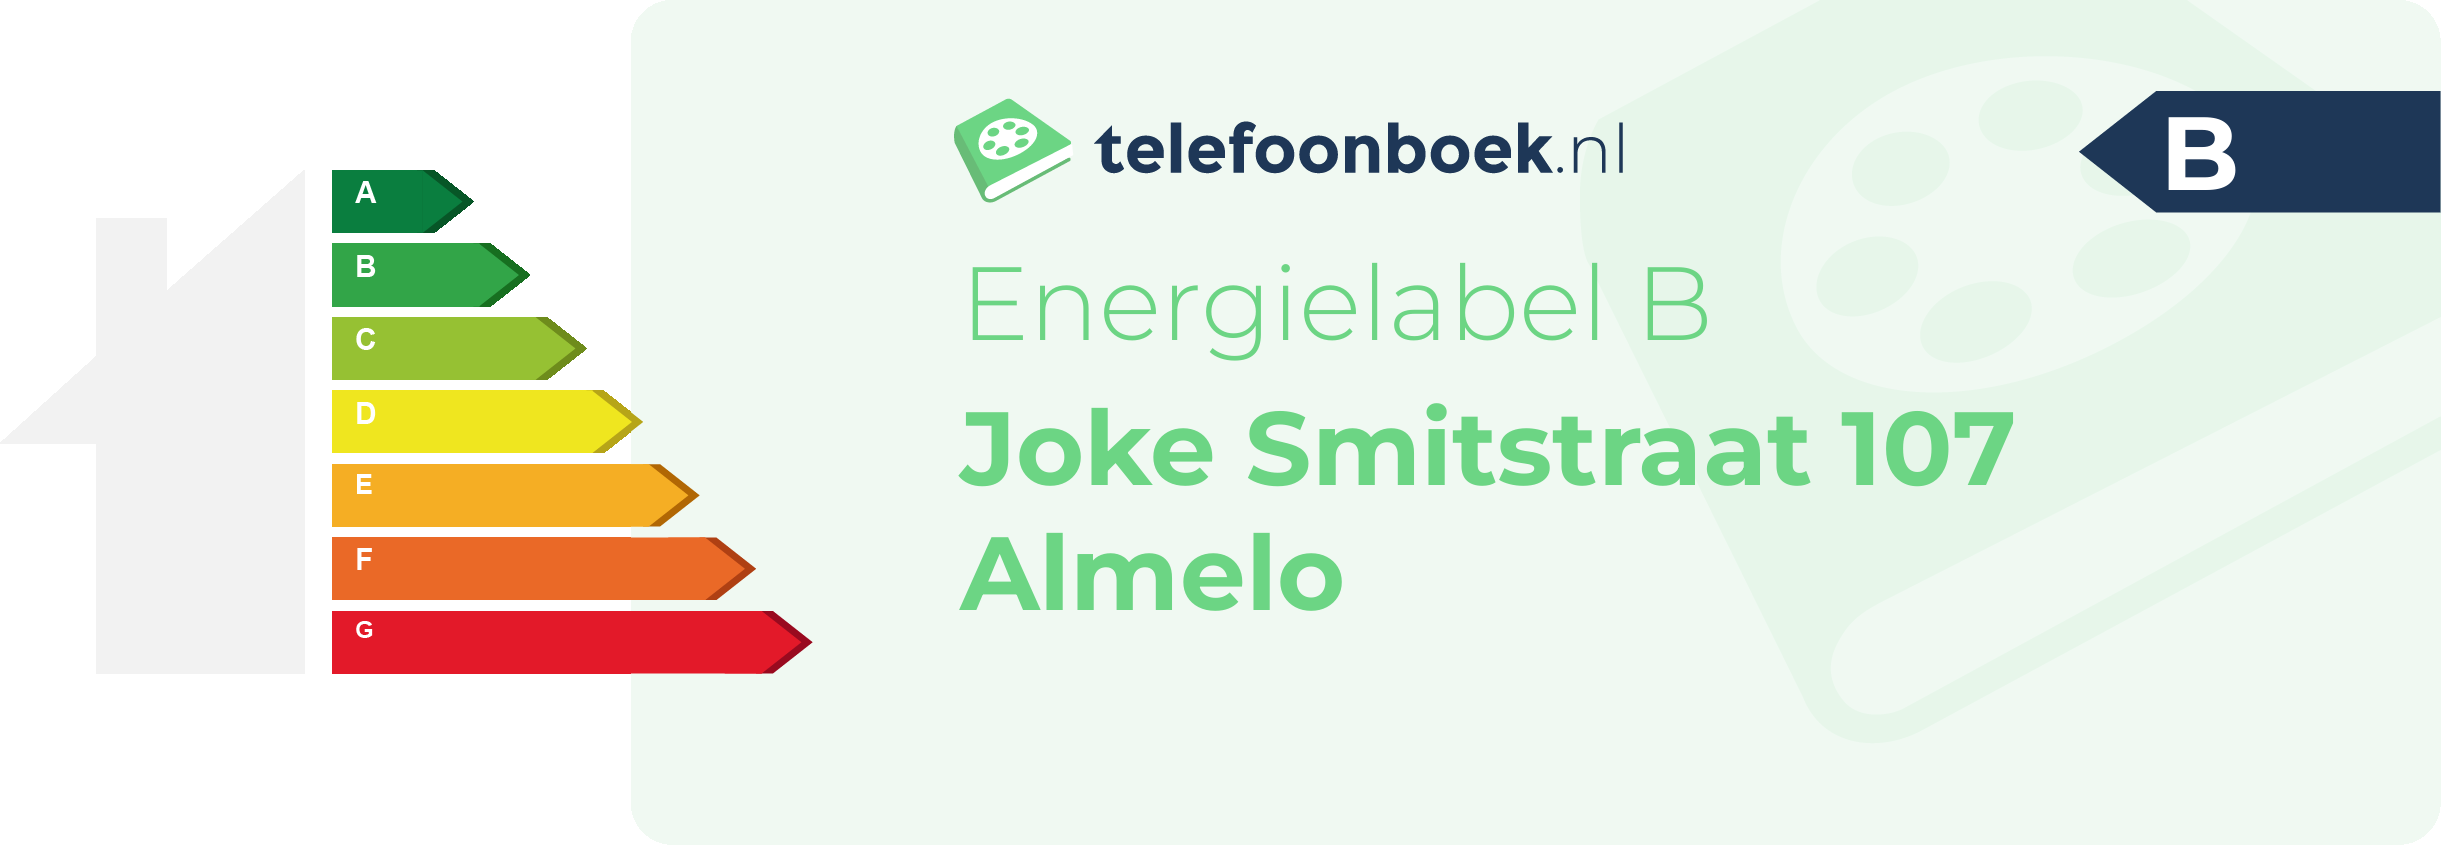 Energielabel Joke Smitstraat 107 Almelo